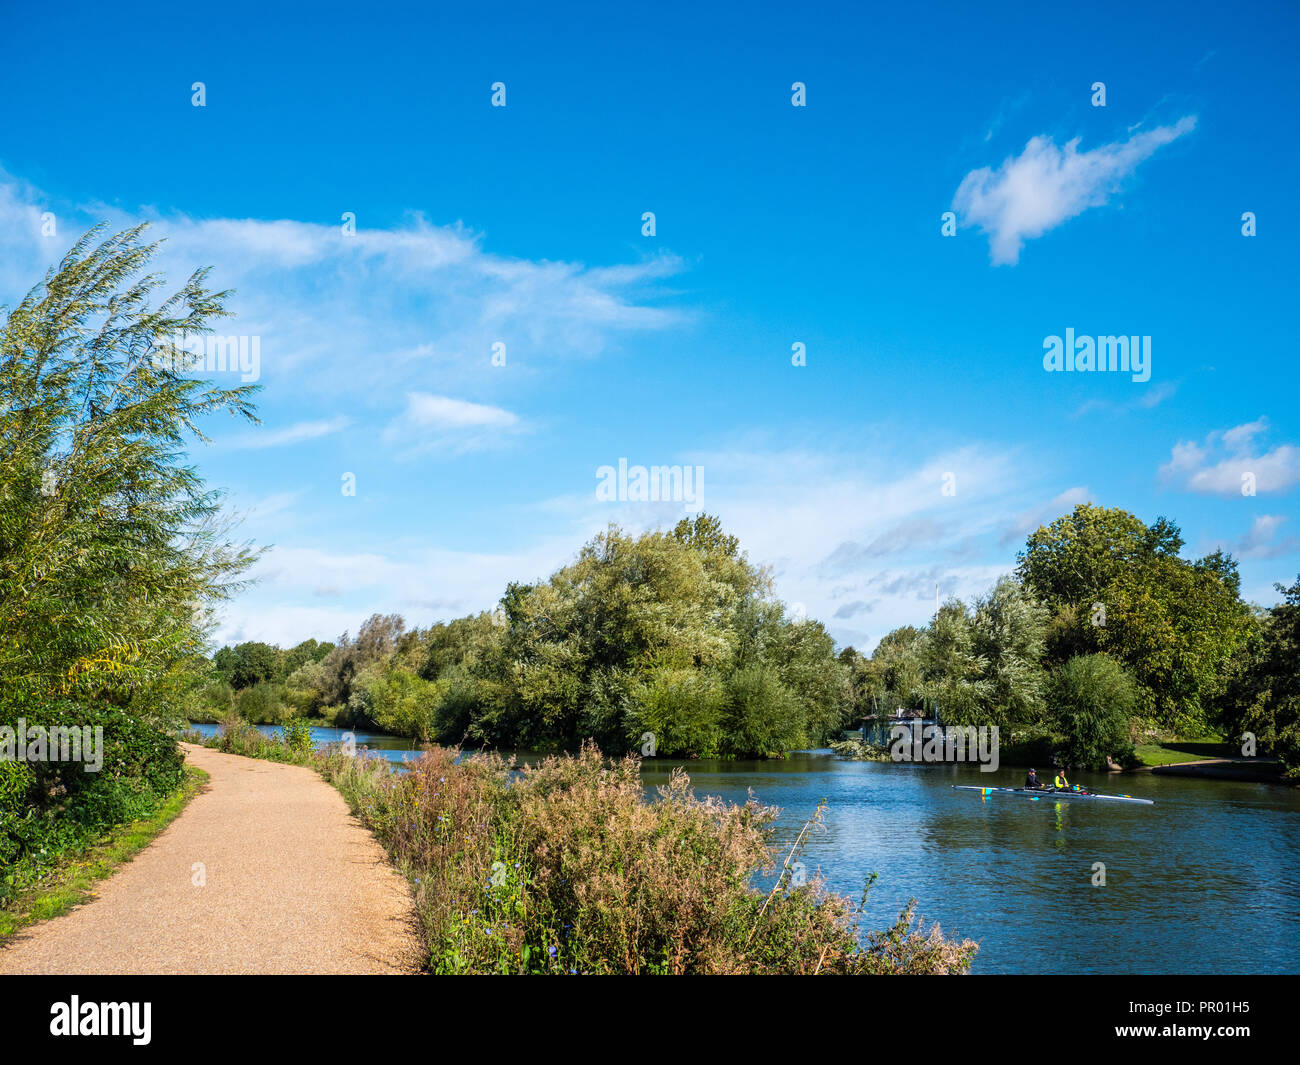 River kayak, Thames Path, il fiume Tamigi, Oxford, Oxfordshire, England, Regno Unito, GB. Foto Stock